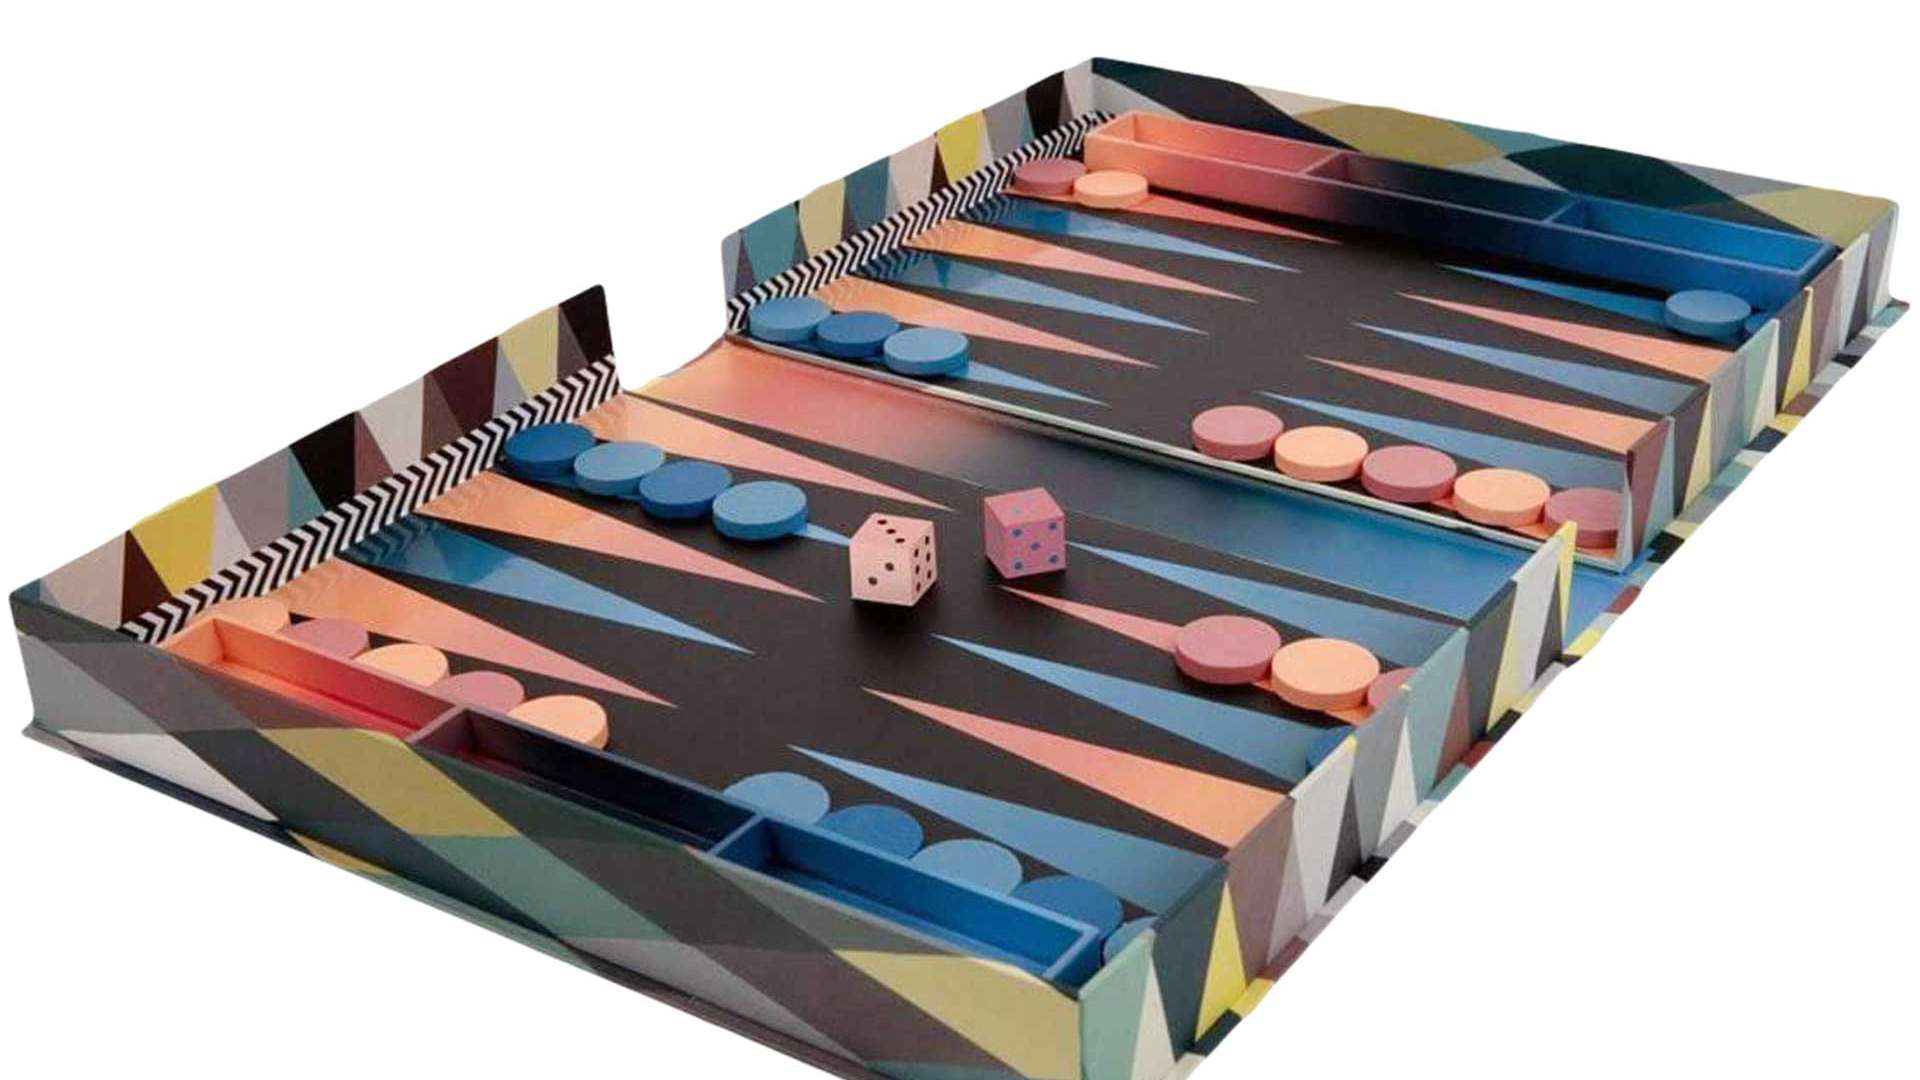 Ein altes Spiel, fashionable aufgerollt: Christian Lacroix’s Backgammon strahlt in Harlekin-Print-Optik und darf als Must-have für passionierte Spieler gesehen werden. christian-lacroix.com